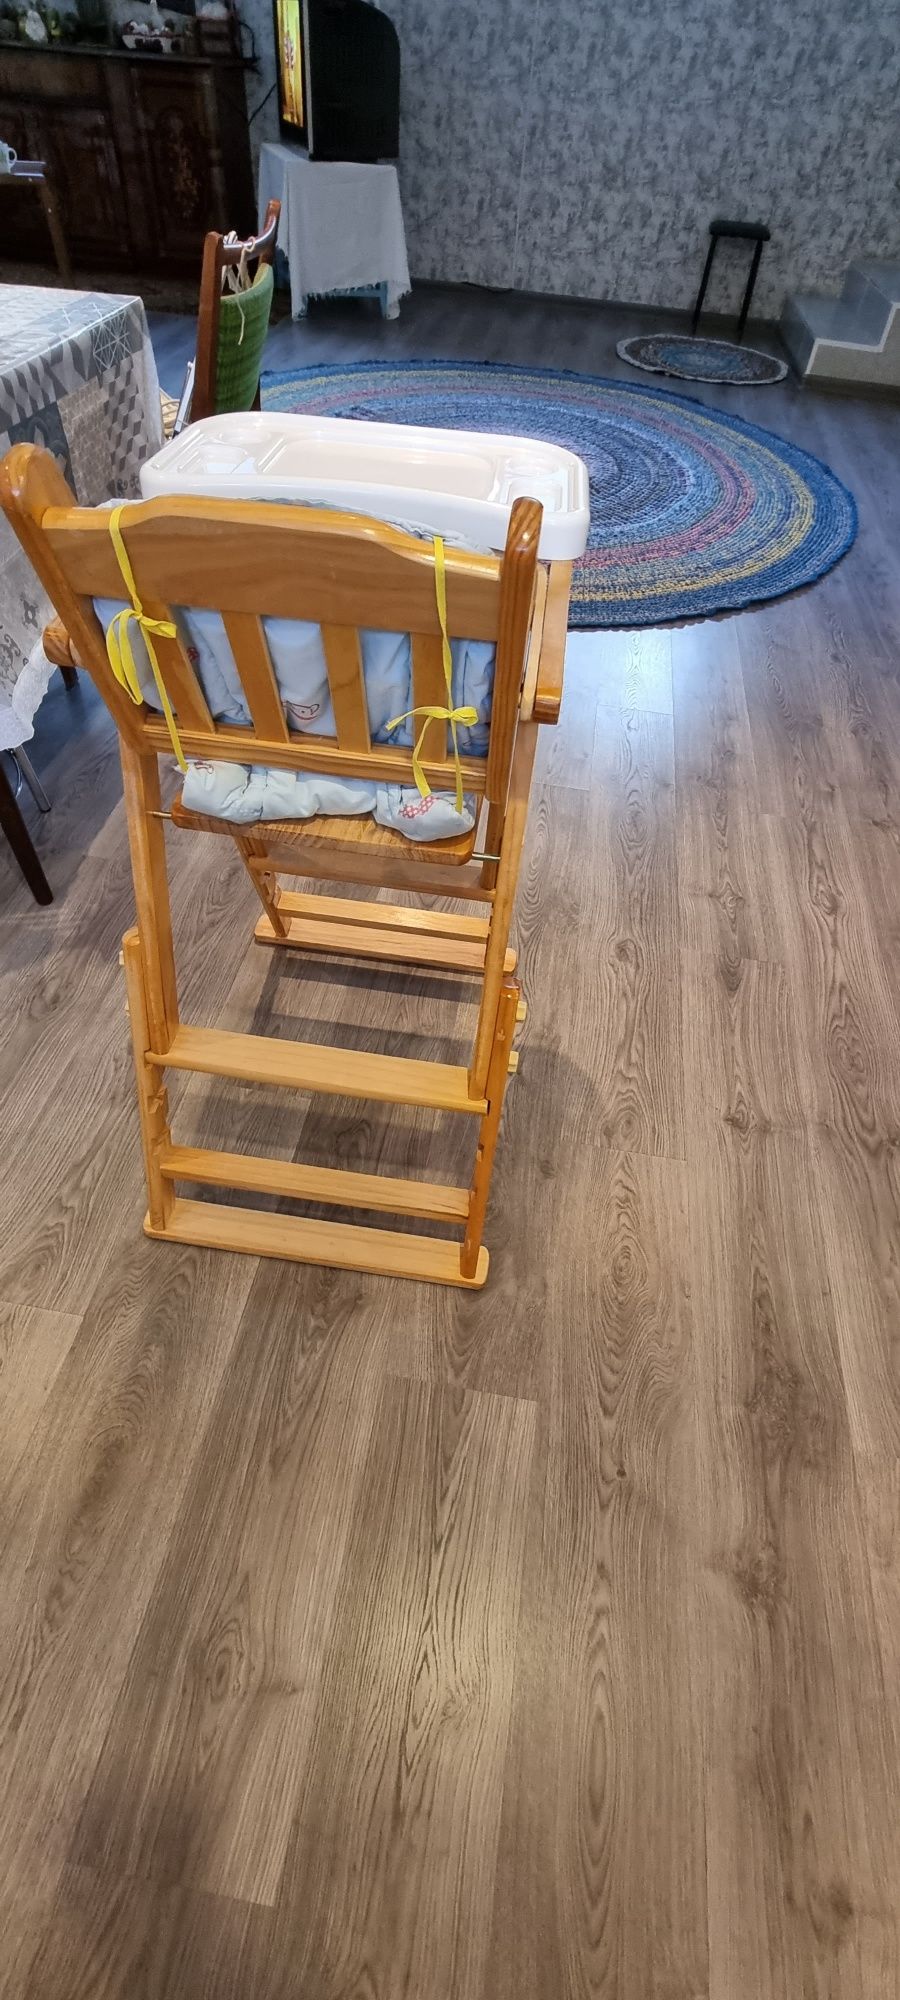 Детский деревянный стульчик для кормления